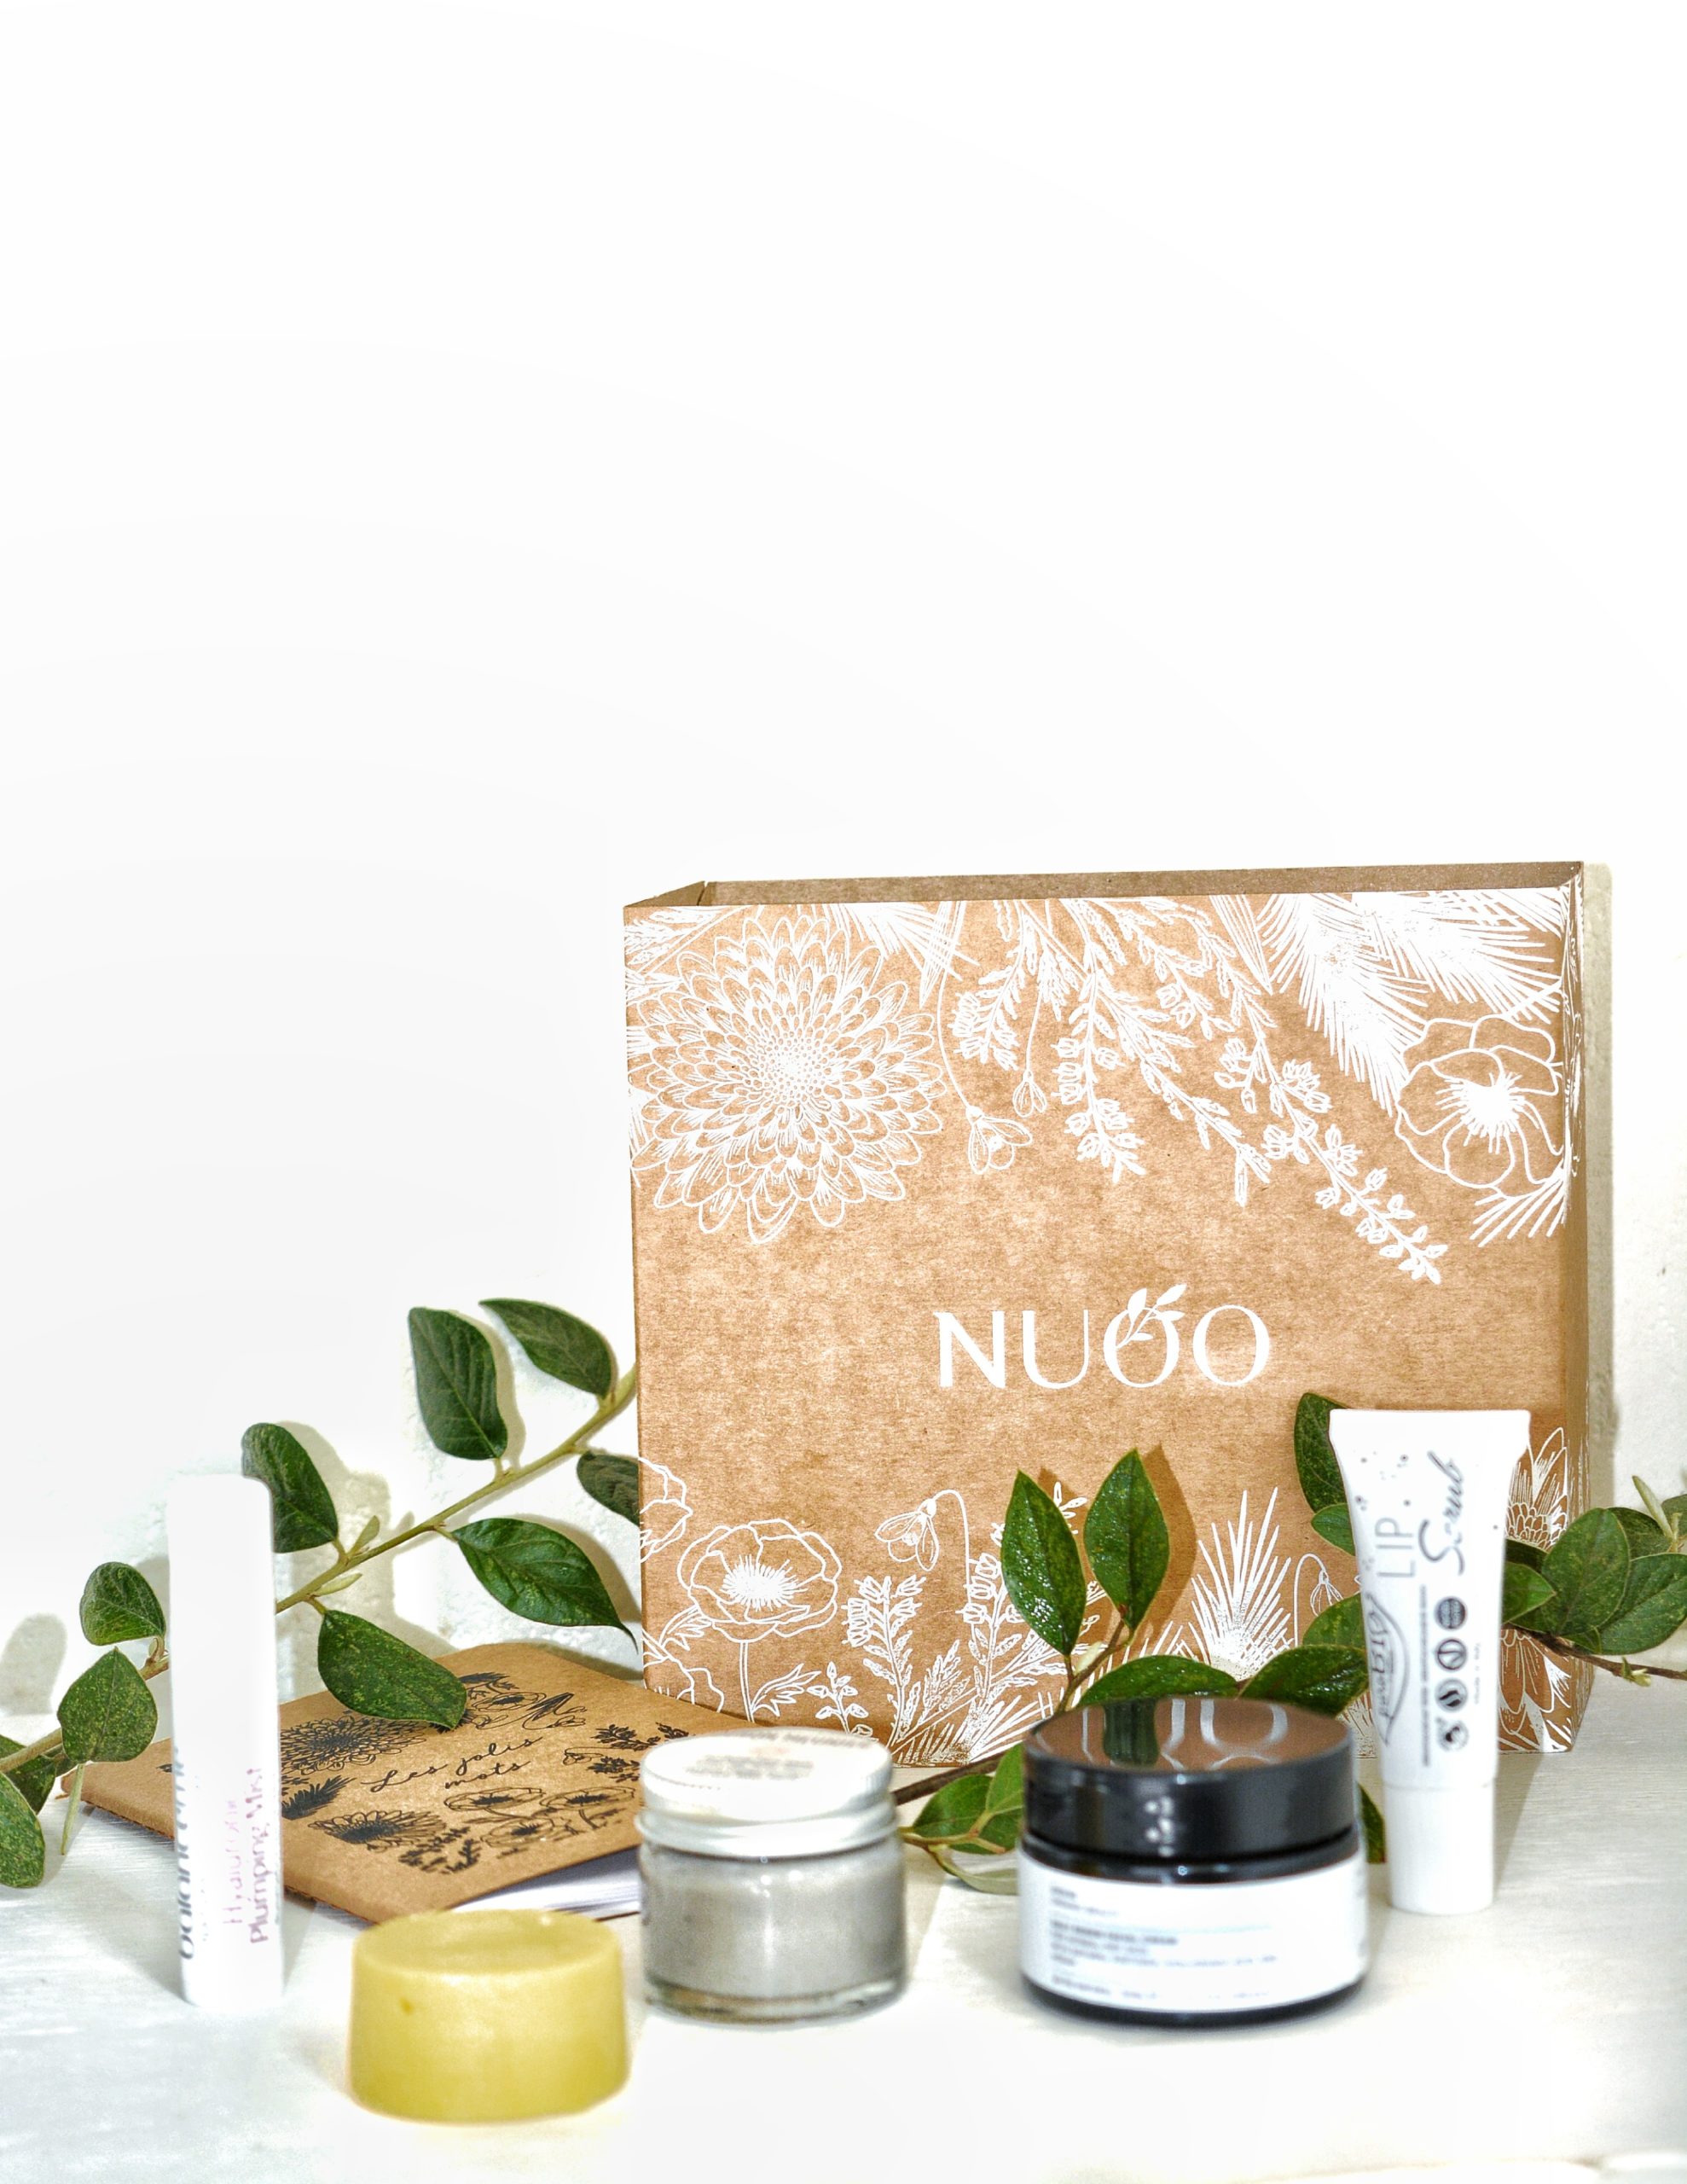 La box beauté bio Nuoo box vaut-elle vraiment le coup ?